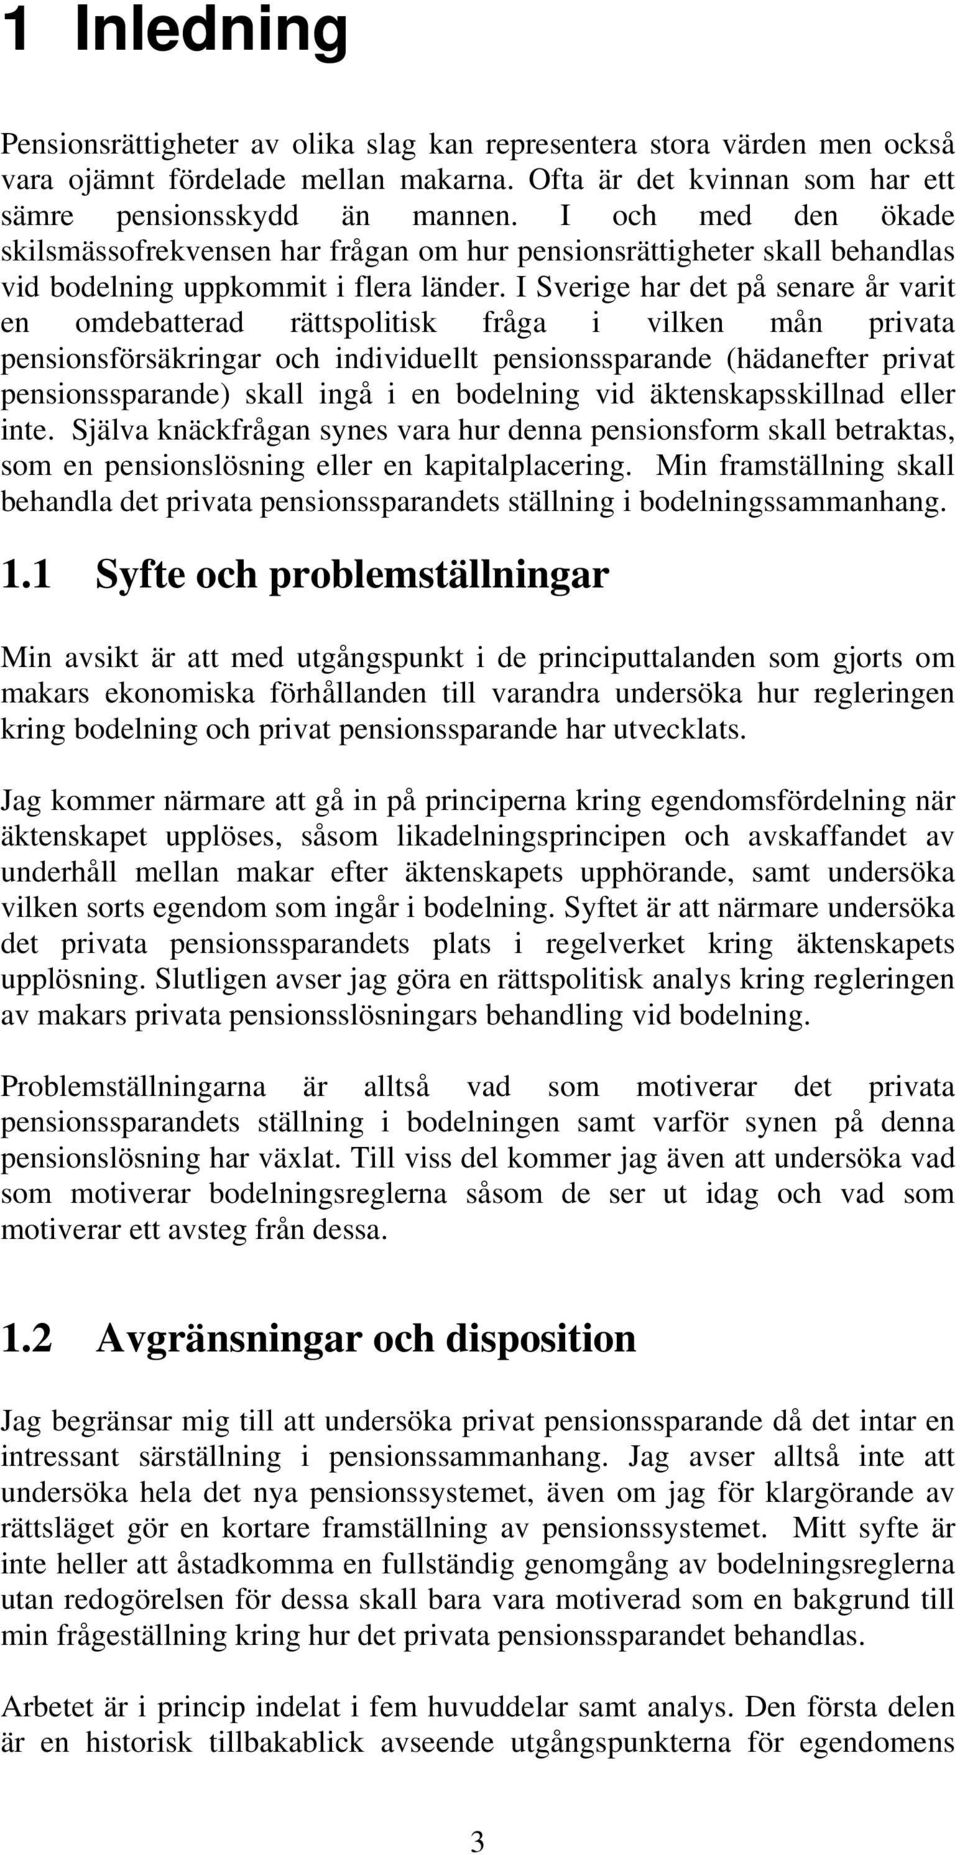 I Sverige har det på senare år varit en omdebatterad rättspolitisk fråga i vilken mån privata pensionsförsäkringar och individuellt pensionssparande (hädanefter privat pensionssparande) skall ingå i